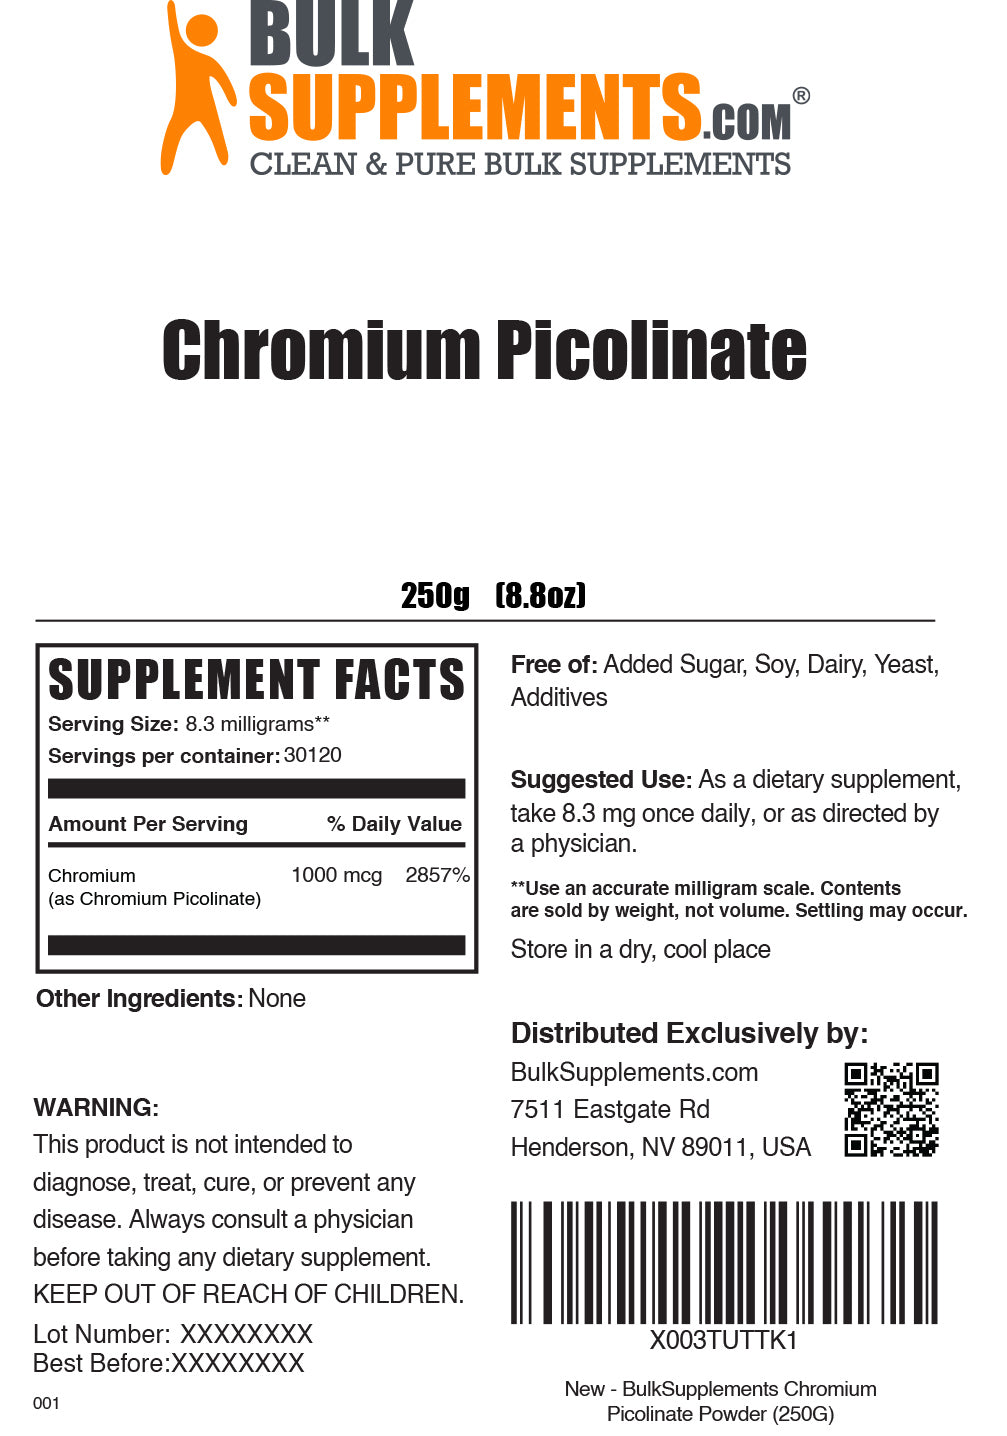 250g of Chromium Picolinate Supplement Facts